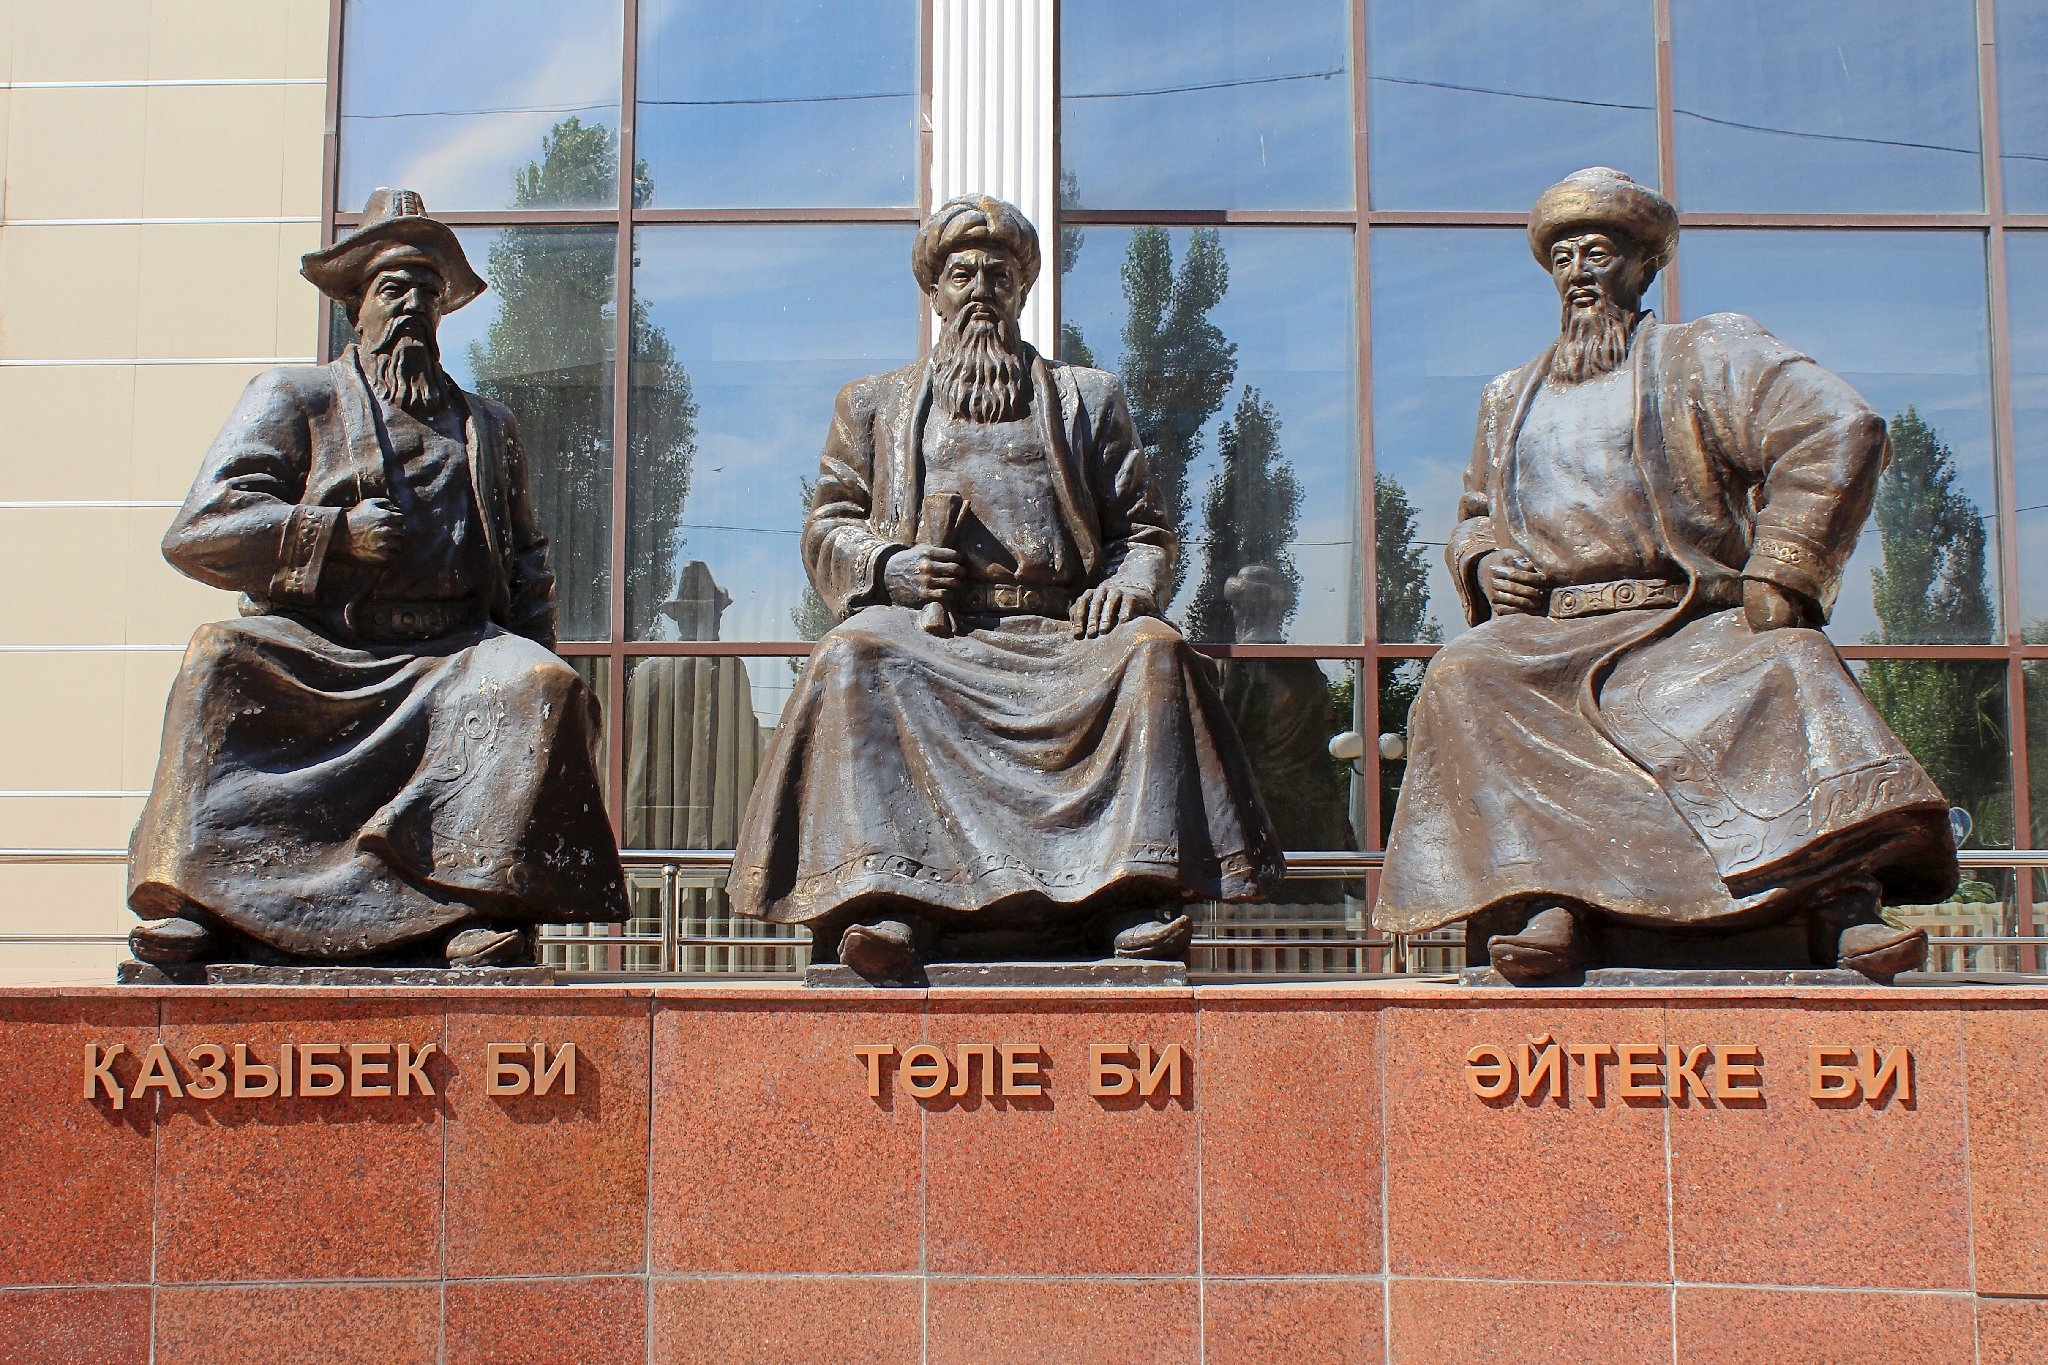 Info Shymkent - Three Kazakh wise men